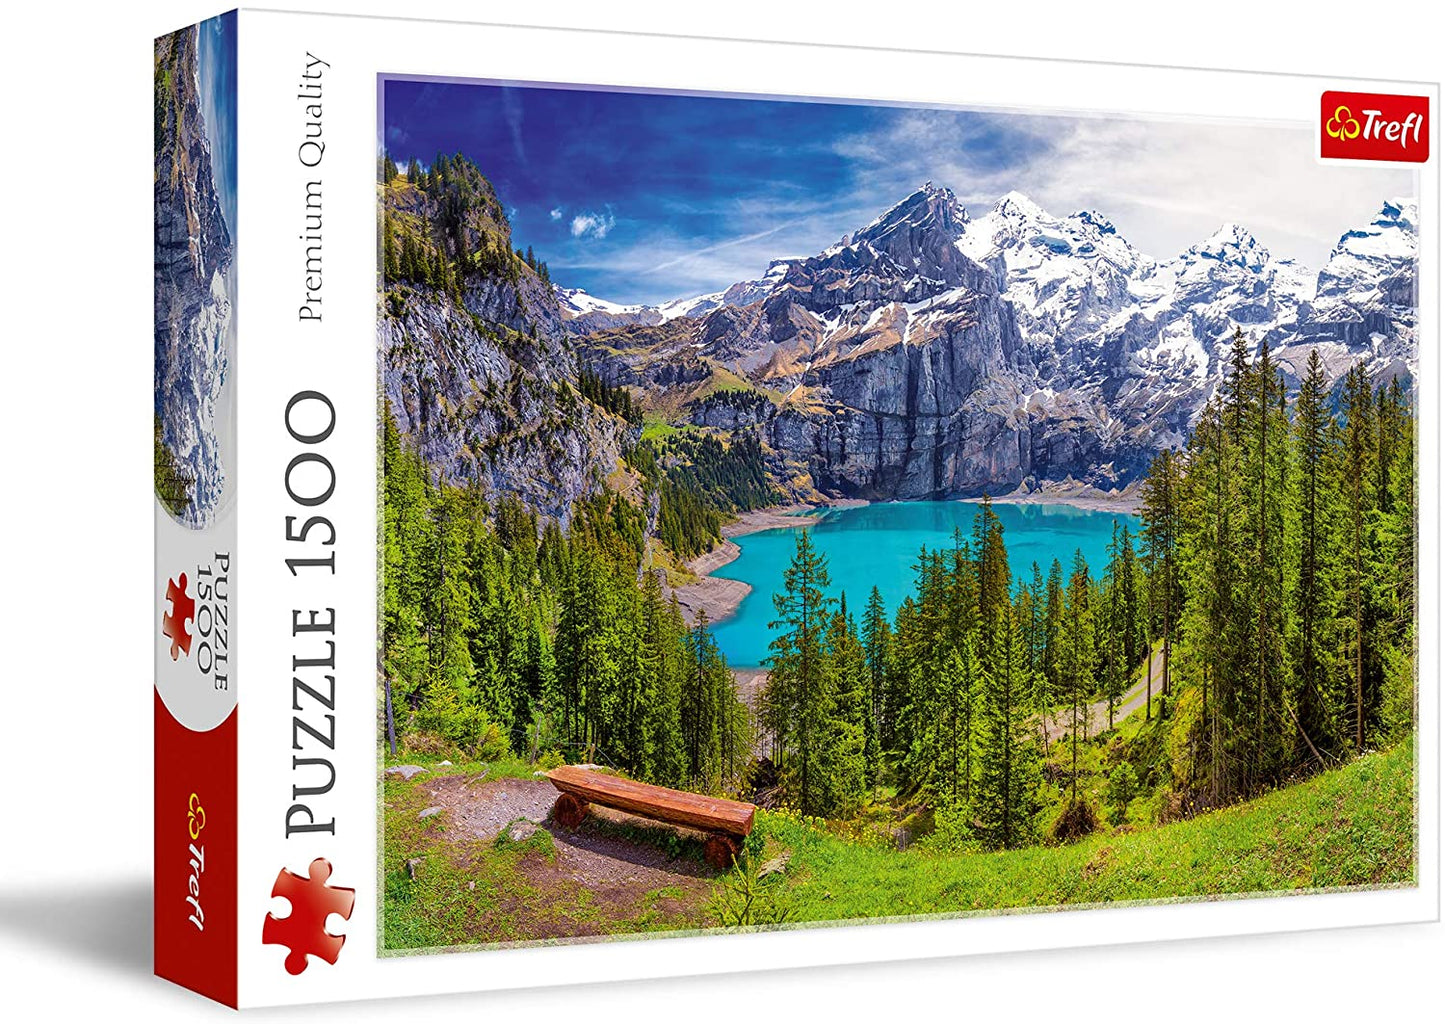 Trefl - Lake Oeschinen, Switzerland - 1500 Piece Jigsaw Puzzle